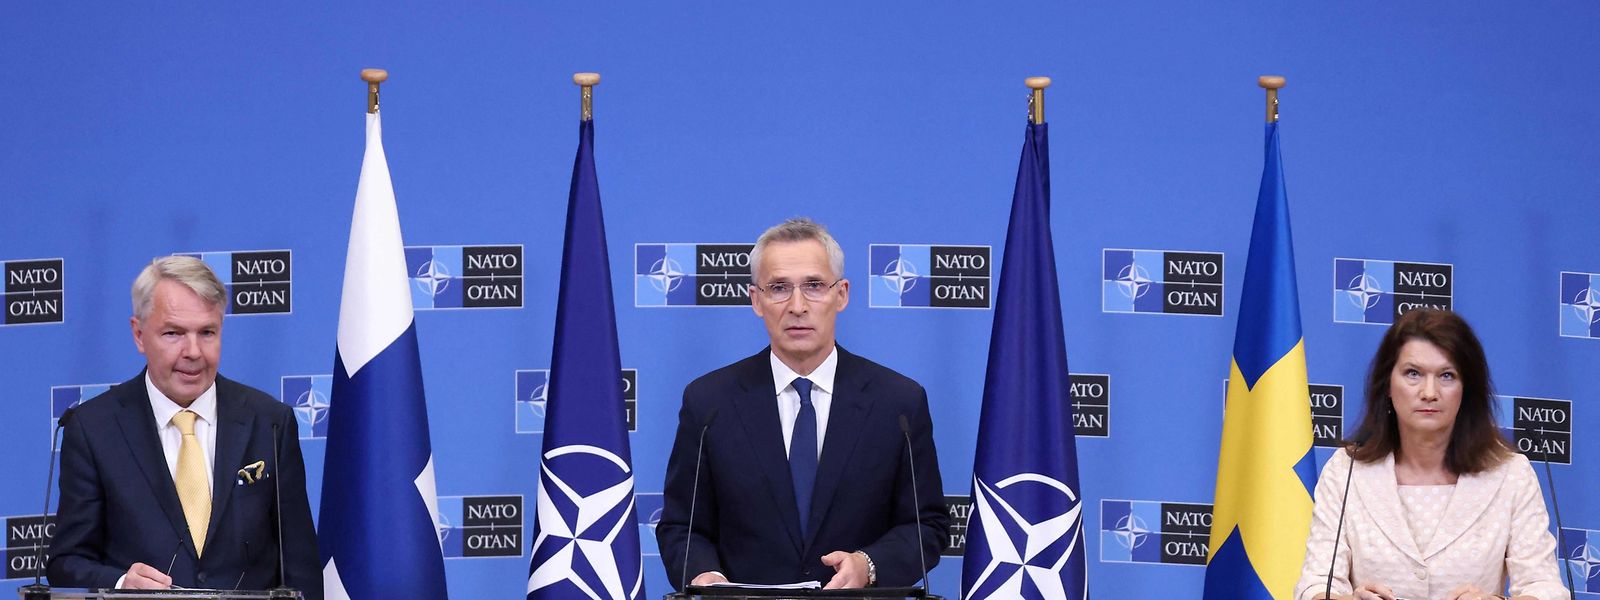 A Suécia e a Finlândia assinaram o seu pedido de adesão à NATO em julho